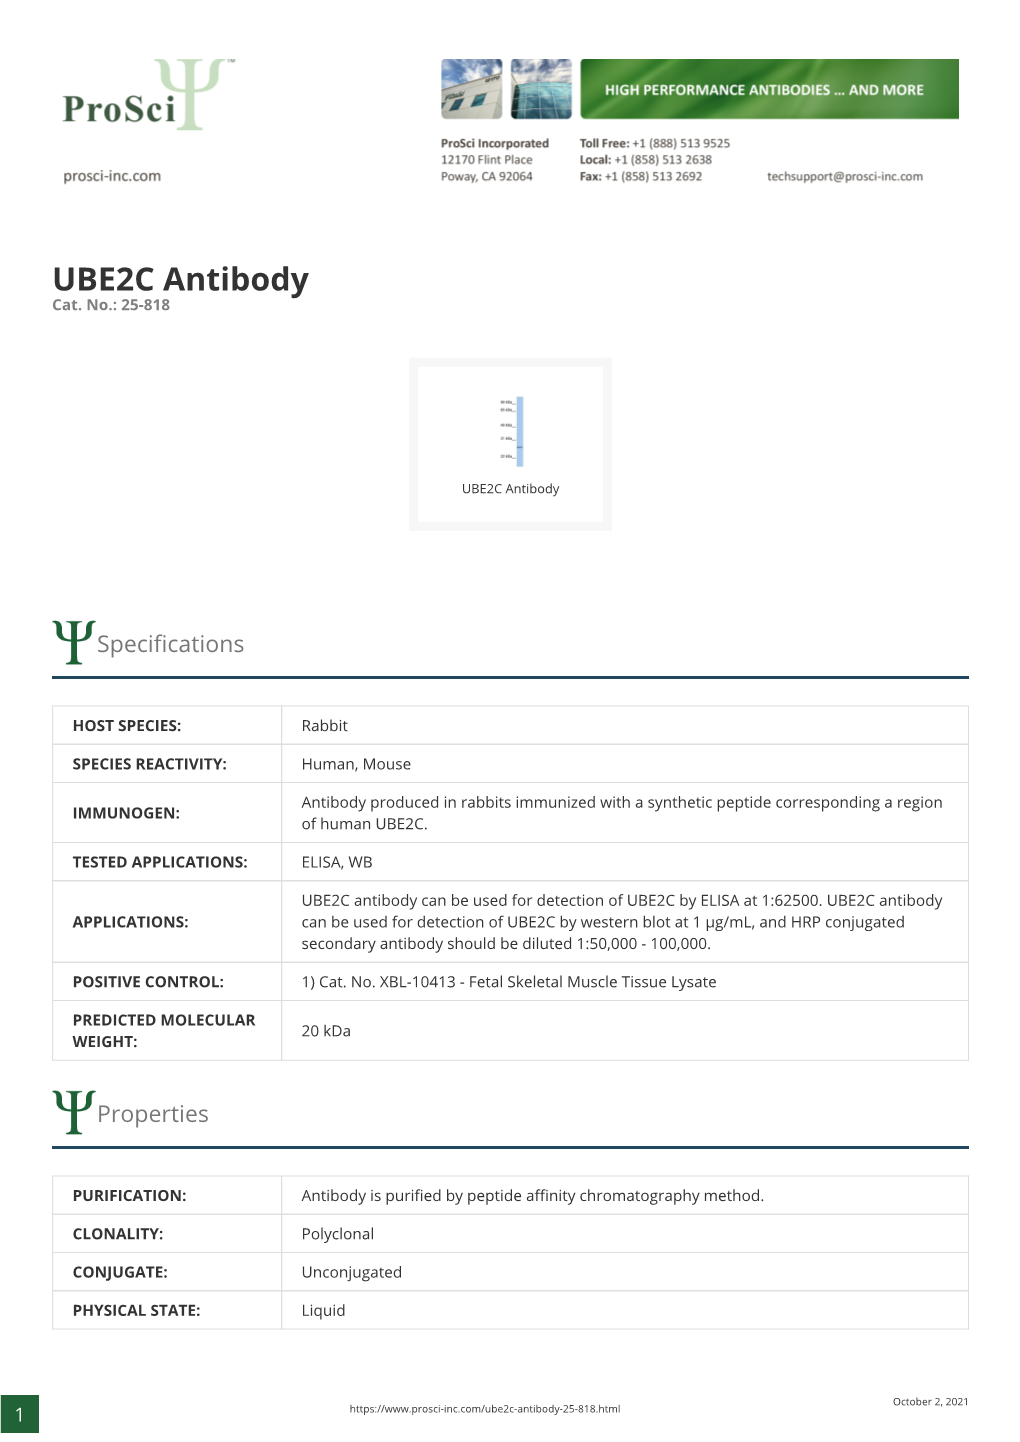 UBE2C Antibody Cat